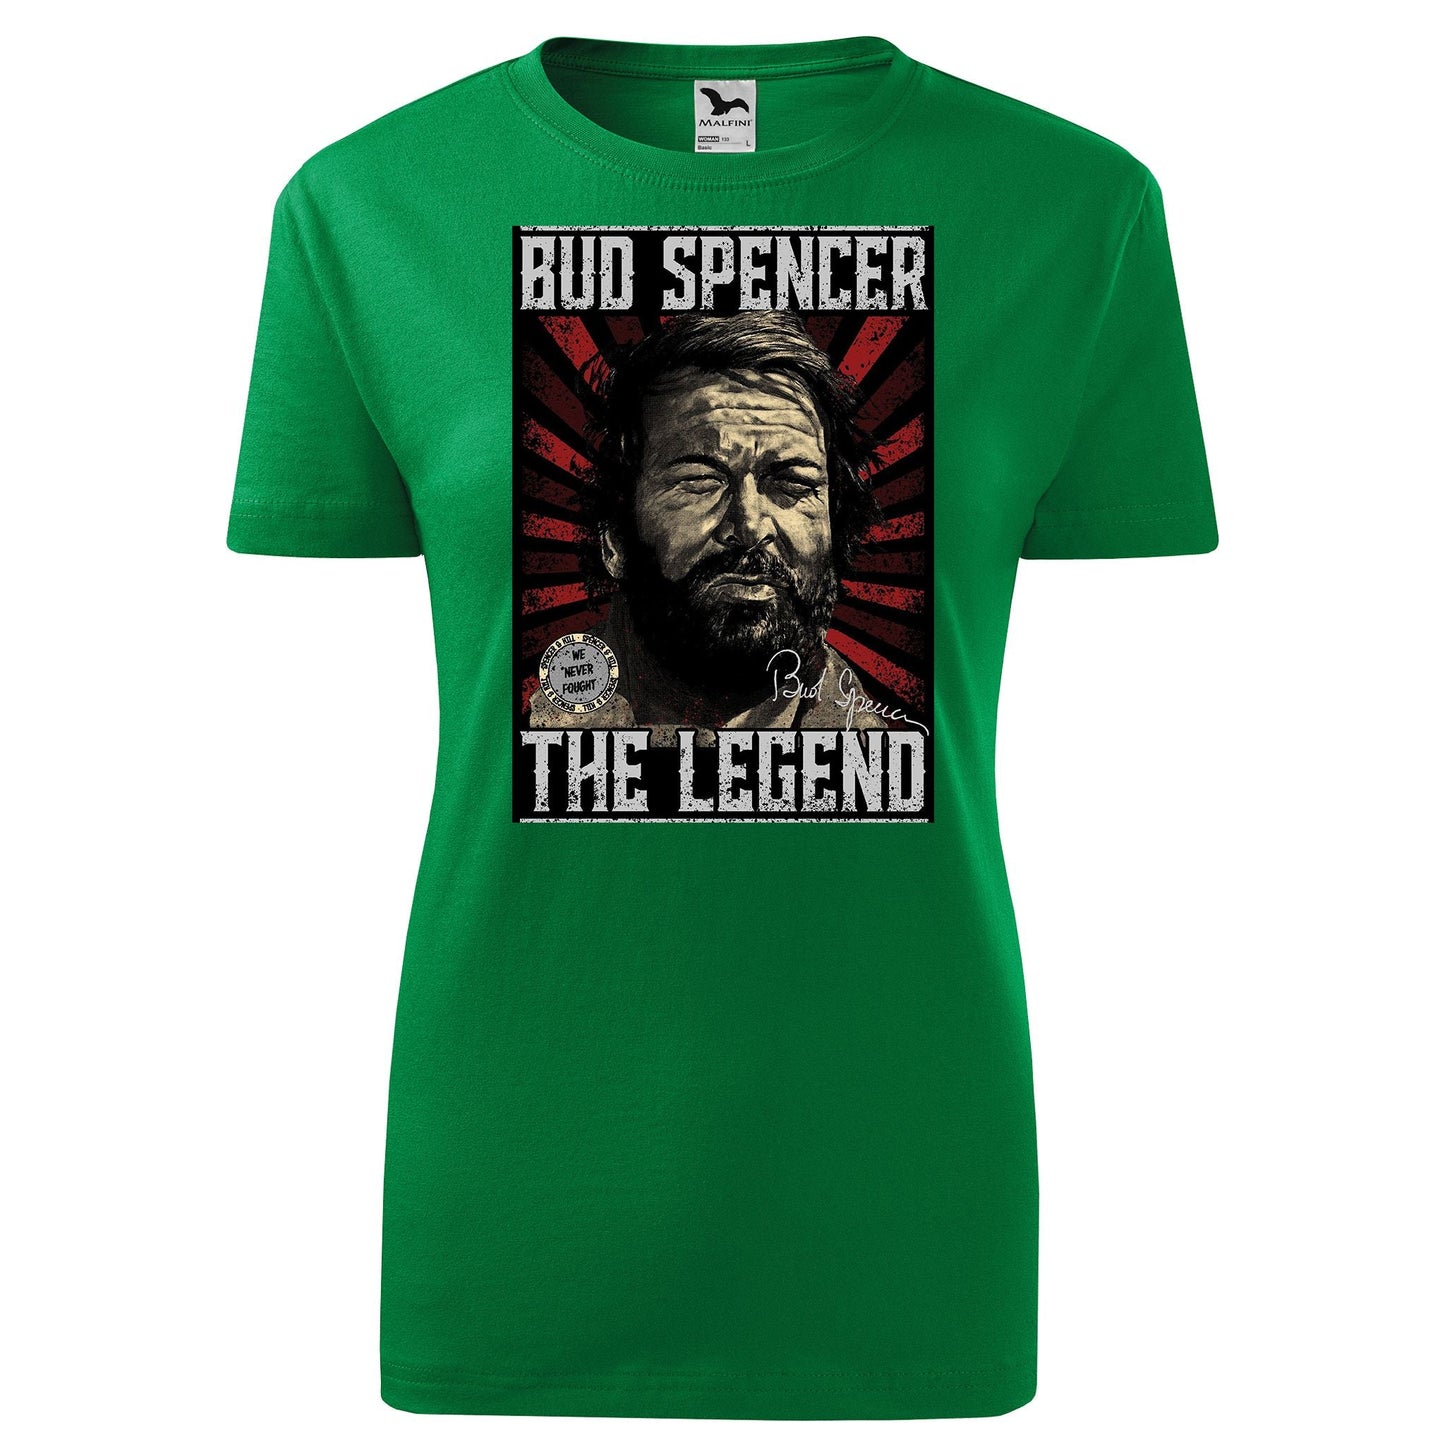 Bud spencer t-shirt - rvdesignprint